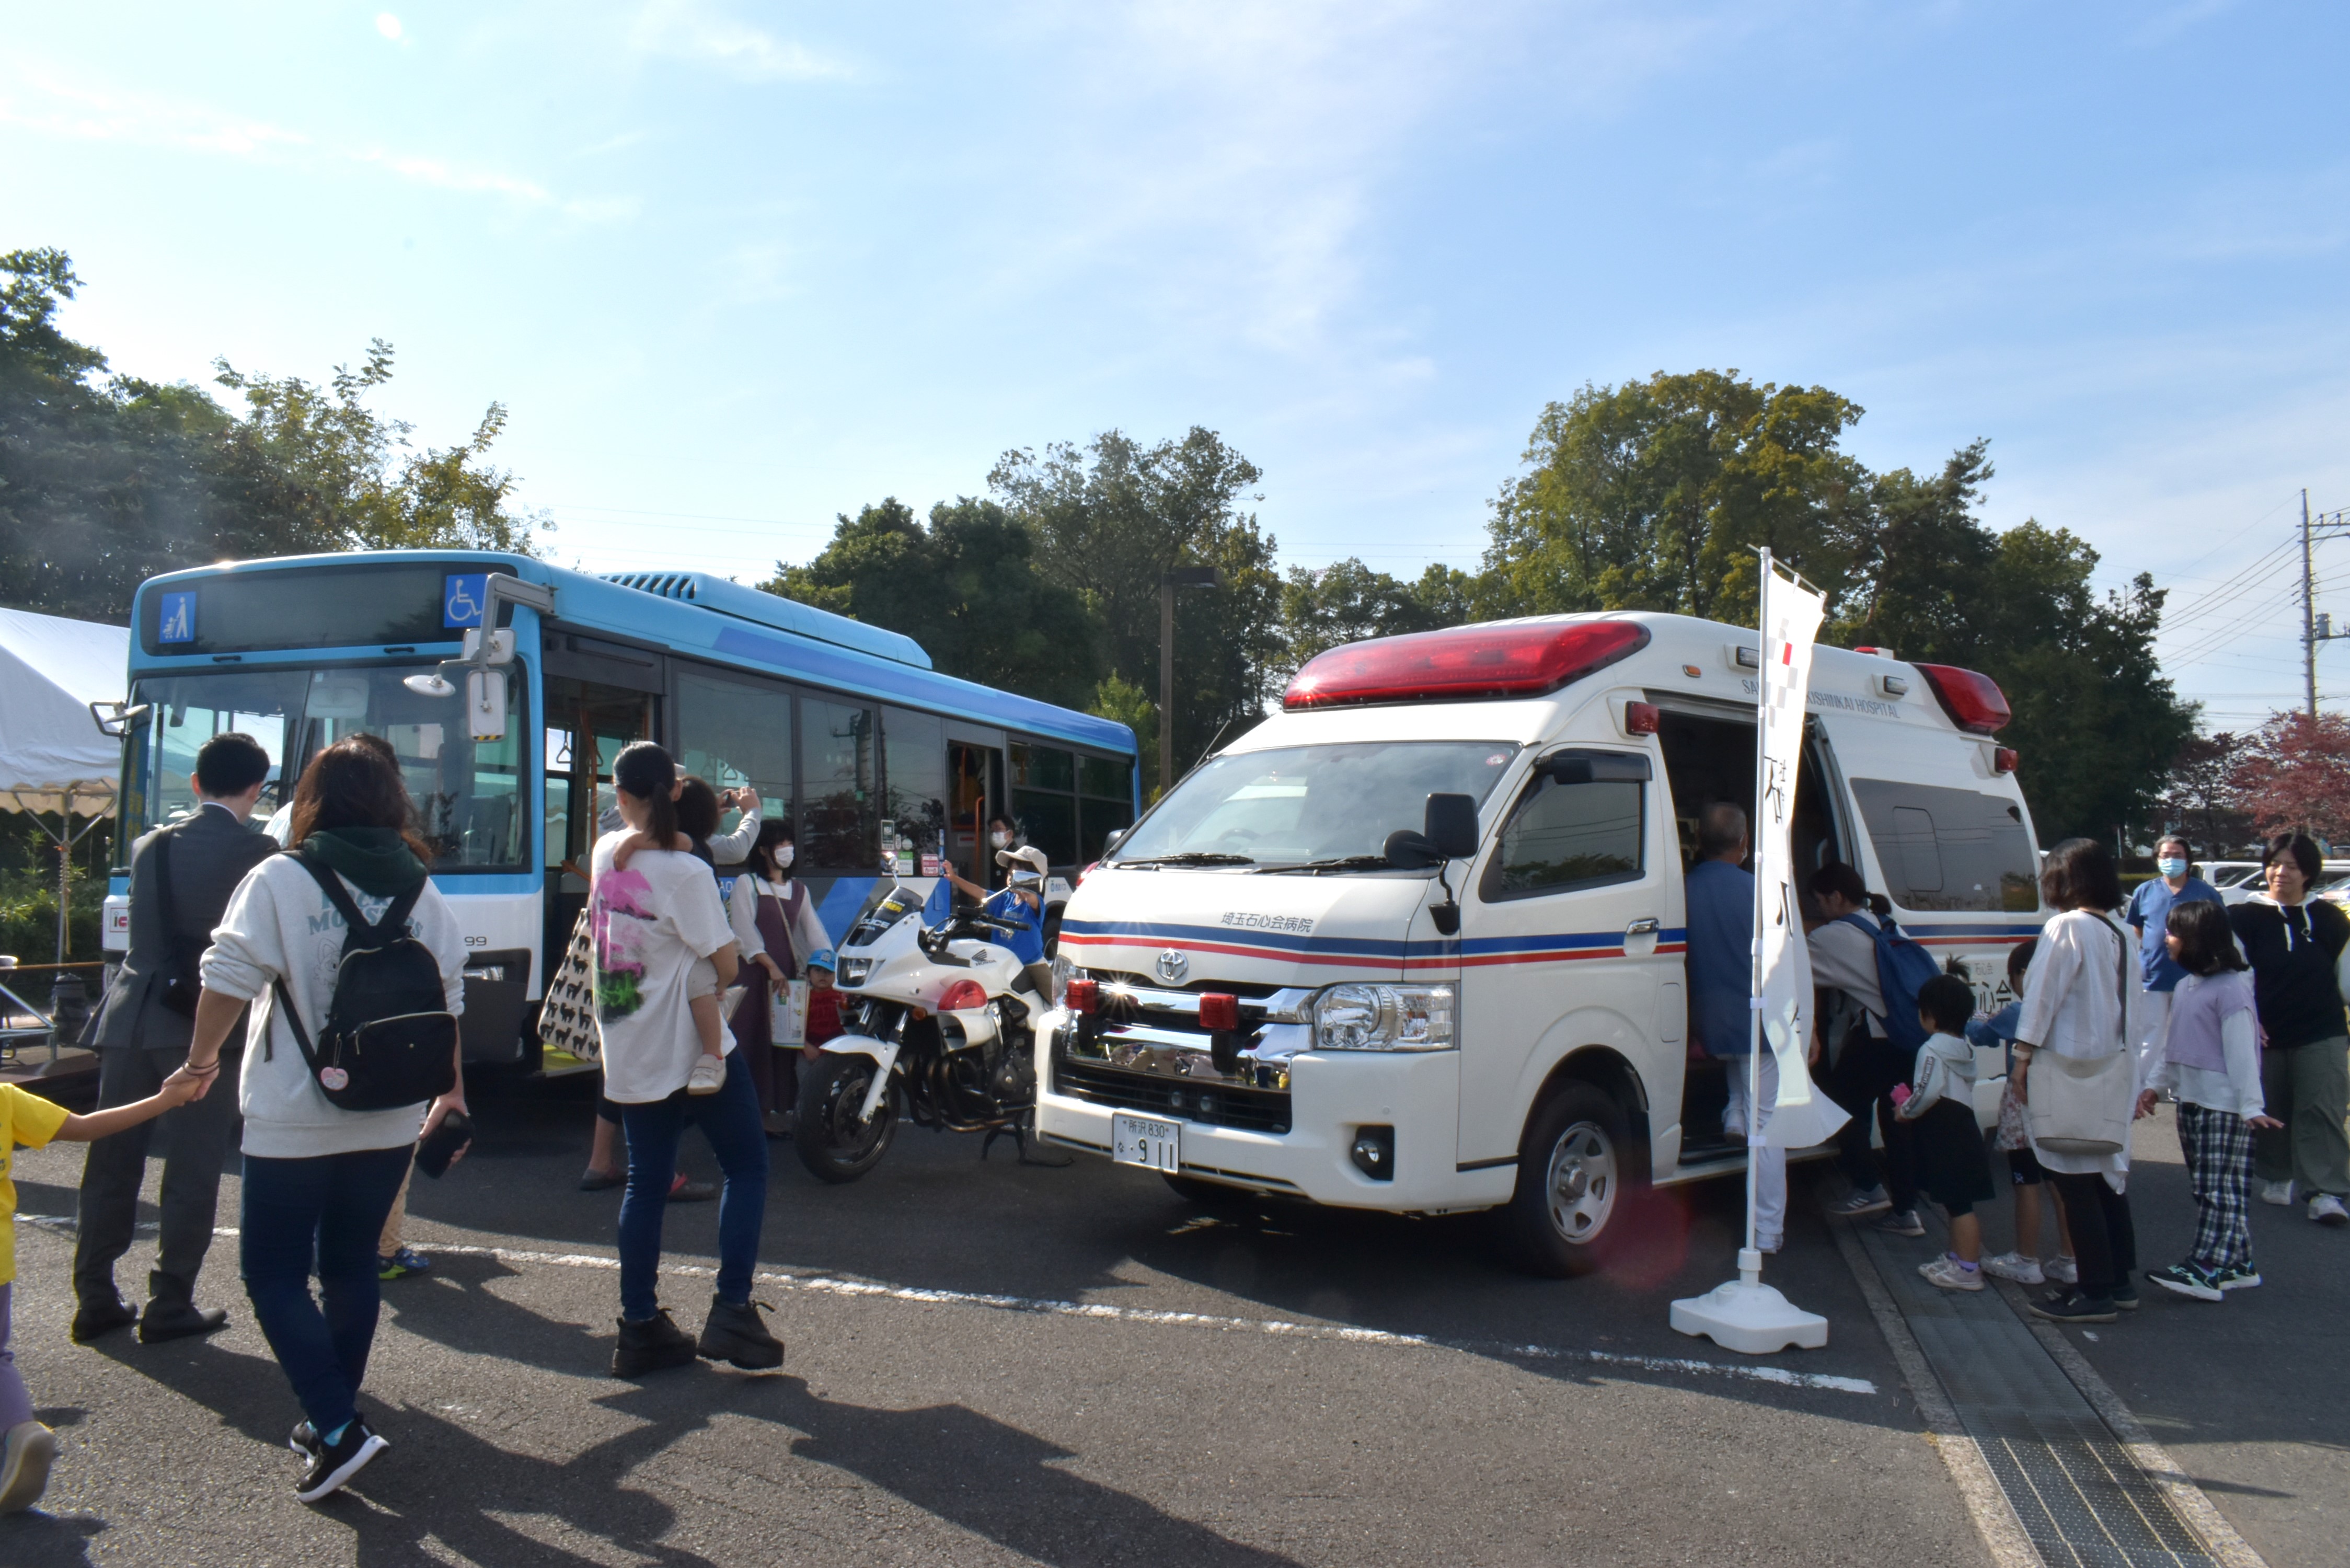 展示された埼玉石心会病院の救急車や西武バスのバス、埼玉県警察の白バイ